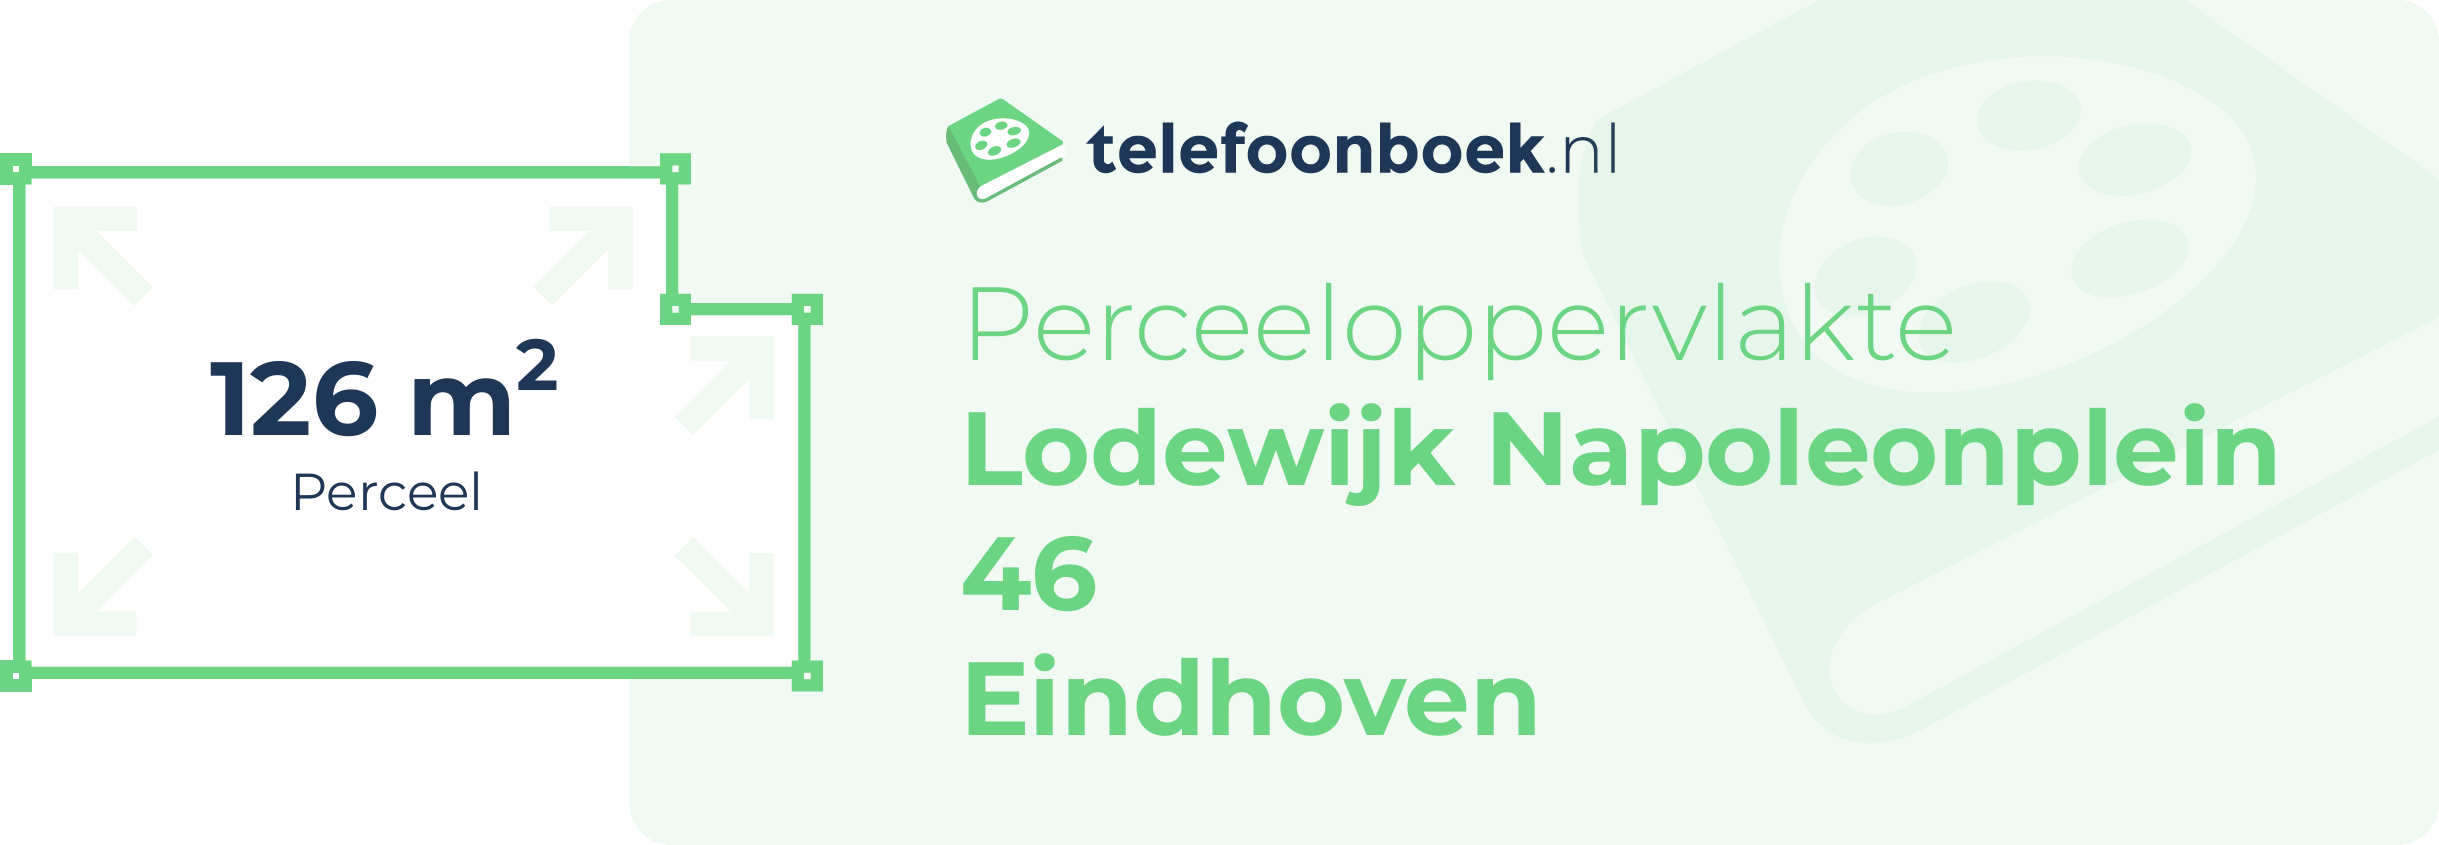 Perceeloppervlakte Lodewijk Napoleonplein 46 Eindhoven